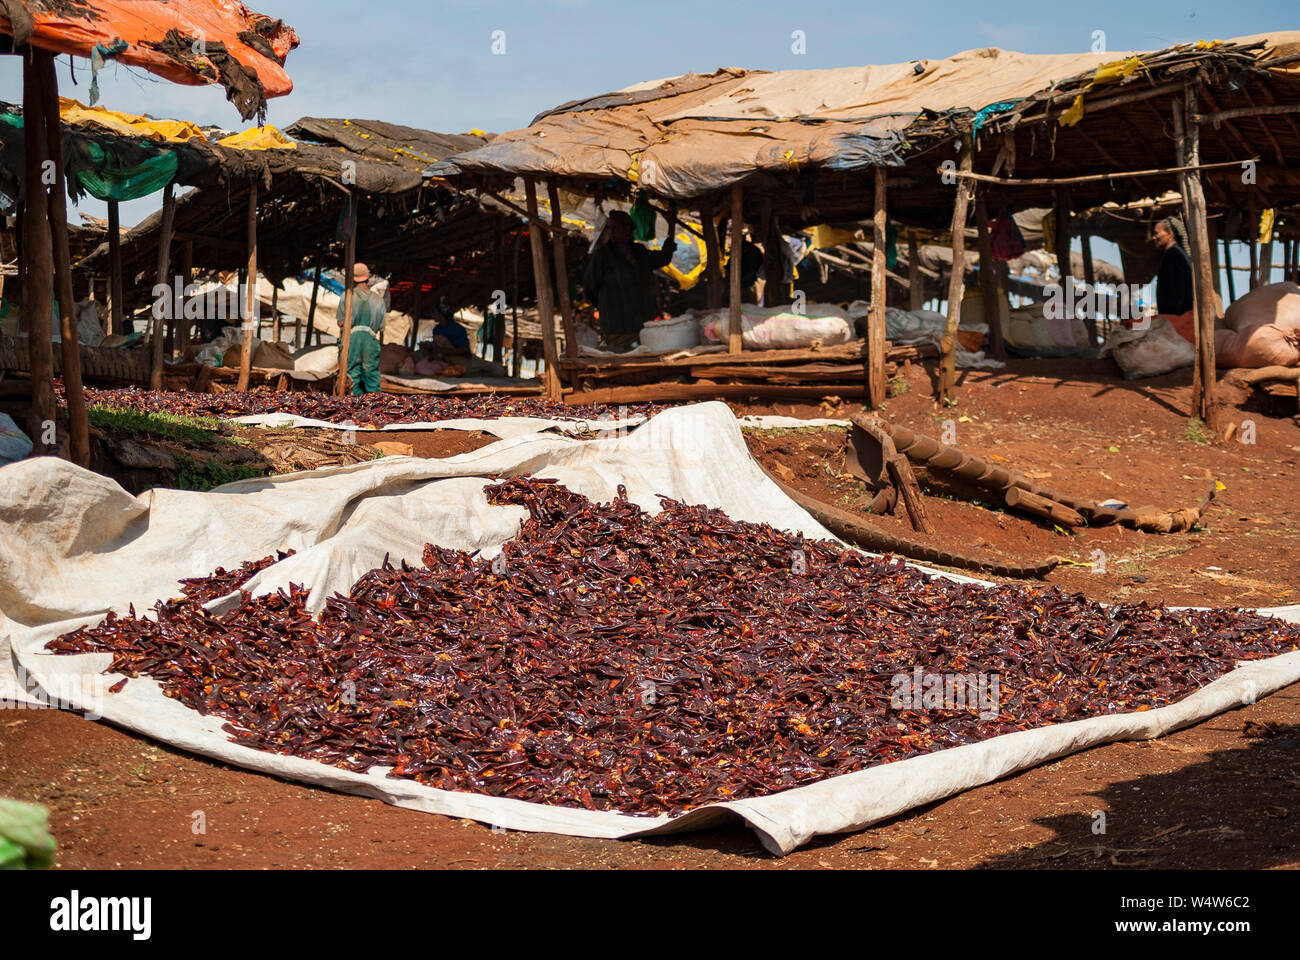 Chilischoten trocknen auf eine große Matte in der Sonne in einem ländlichen Markt in Illubabor, Äthiopien Stockfoto